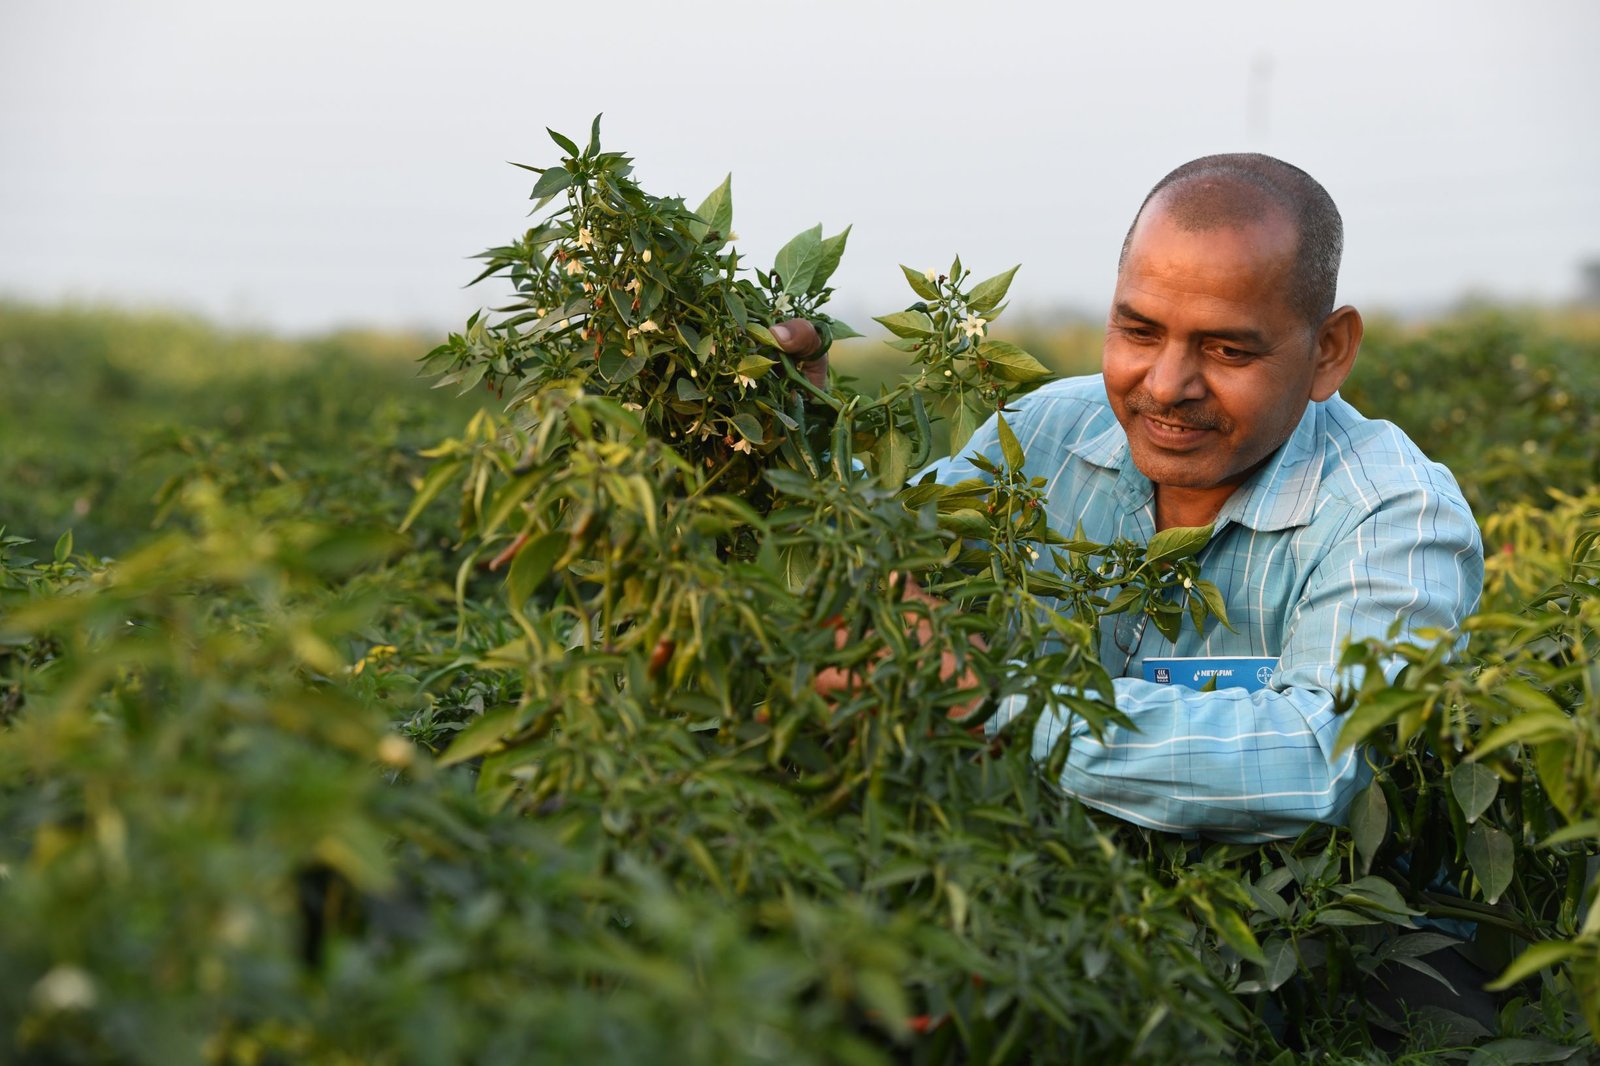 better-life-farming-alliance-launches-new-agri-entrepreneurship-model